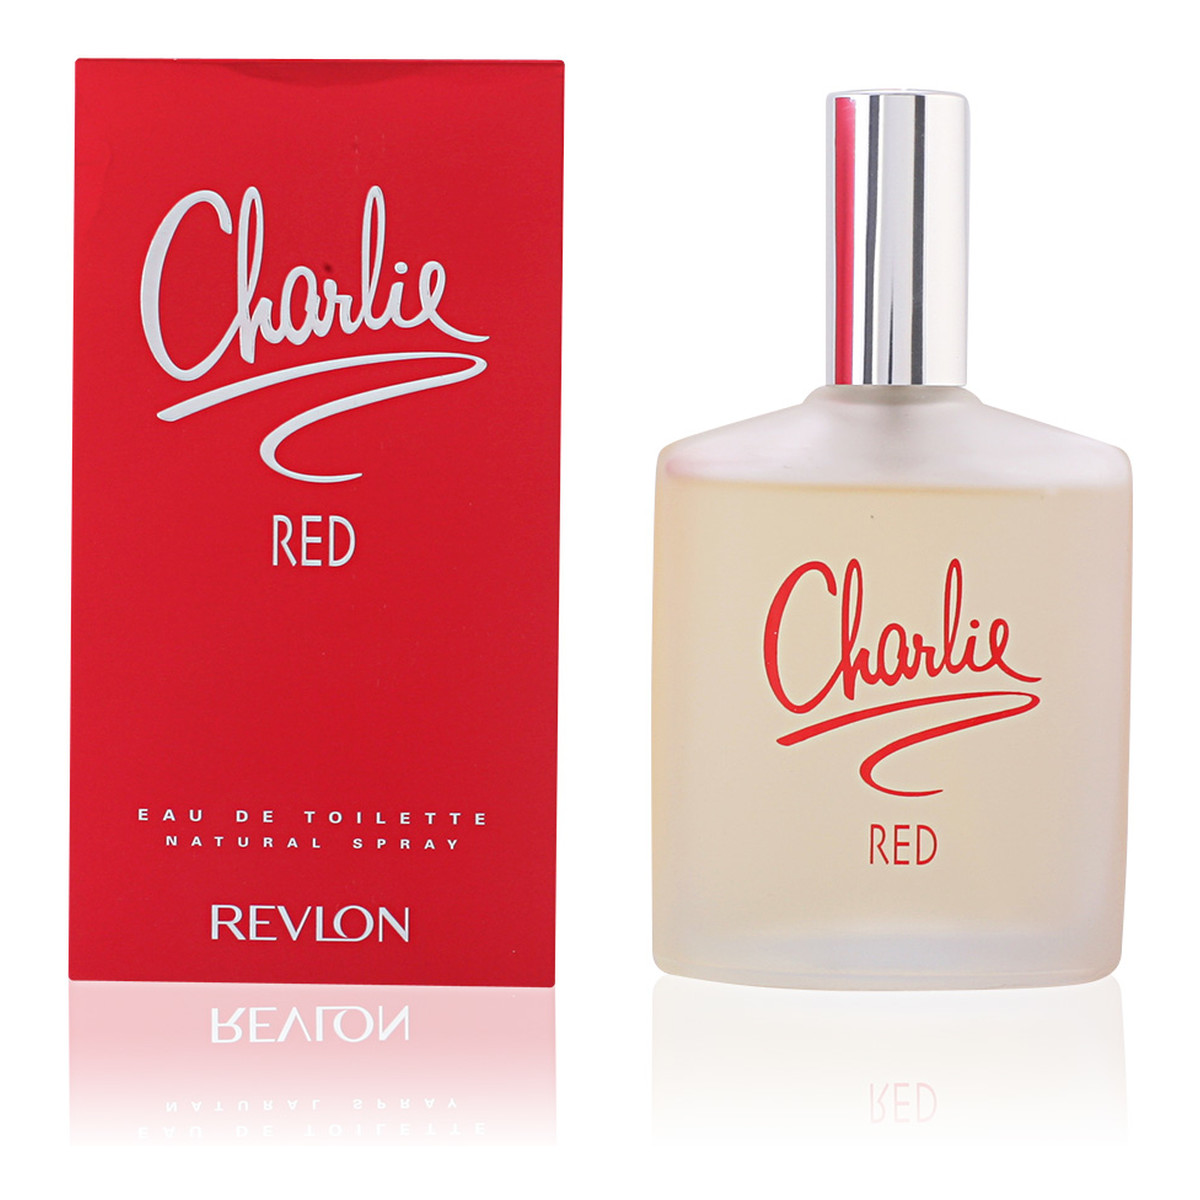 Revlon CHARLIE RED woda toaletowa dla kobiet 100ml